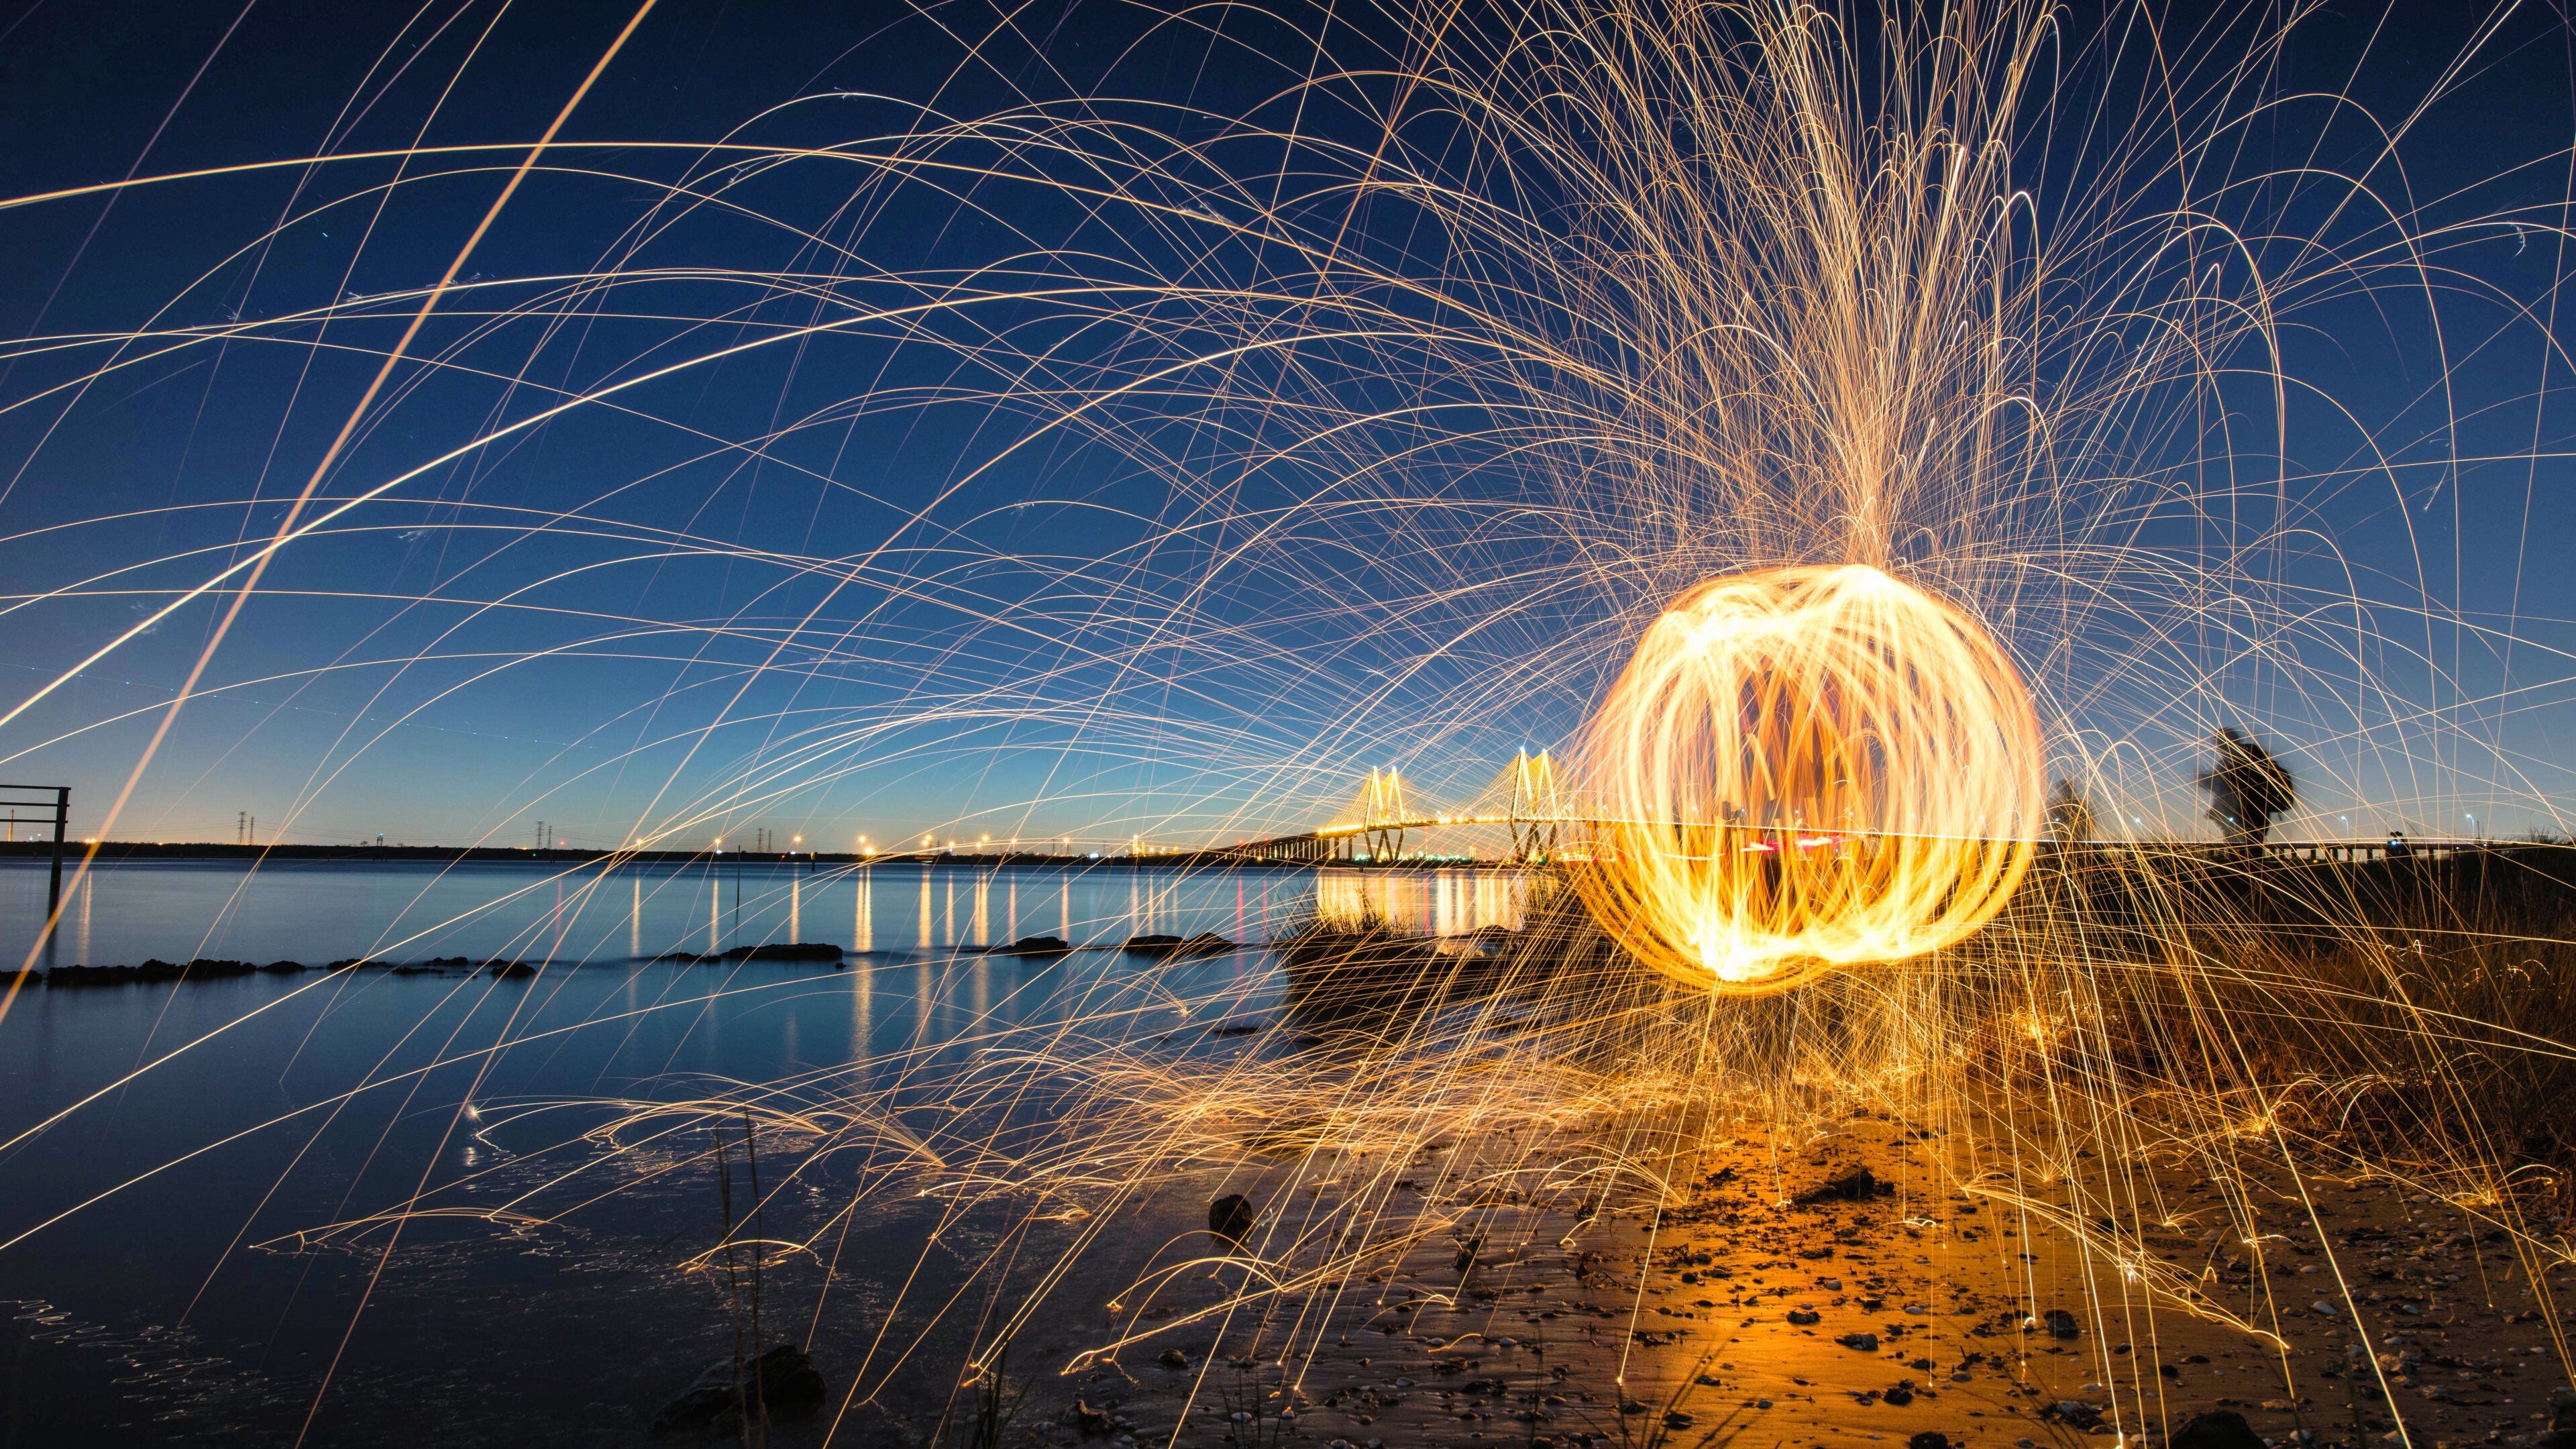 Gold Lights: Fireworks at the ocean beach, Golden ball-shaped lights, Atmospheric. 3840x2160 4K Wallpaper.